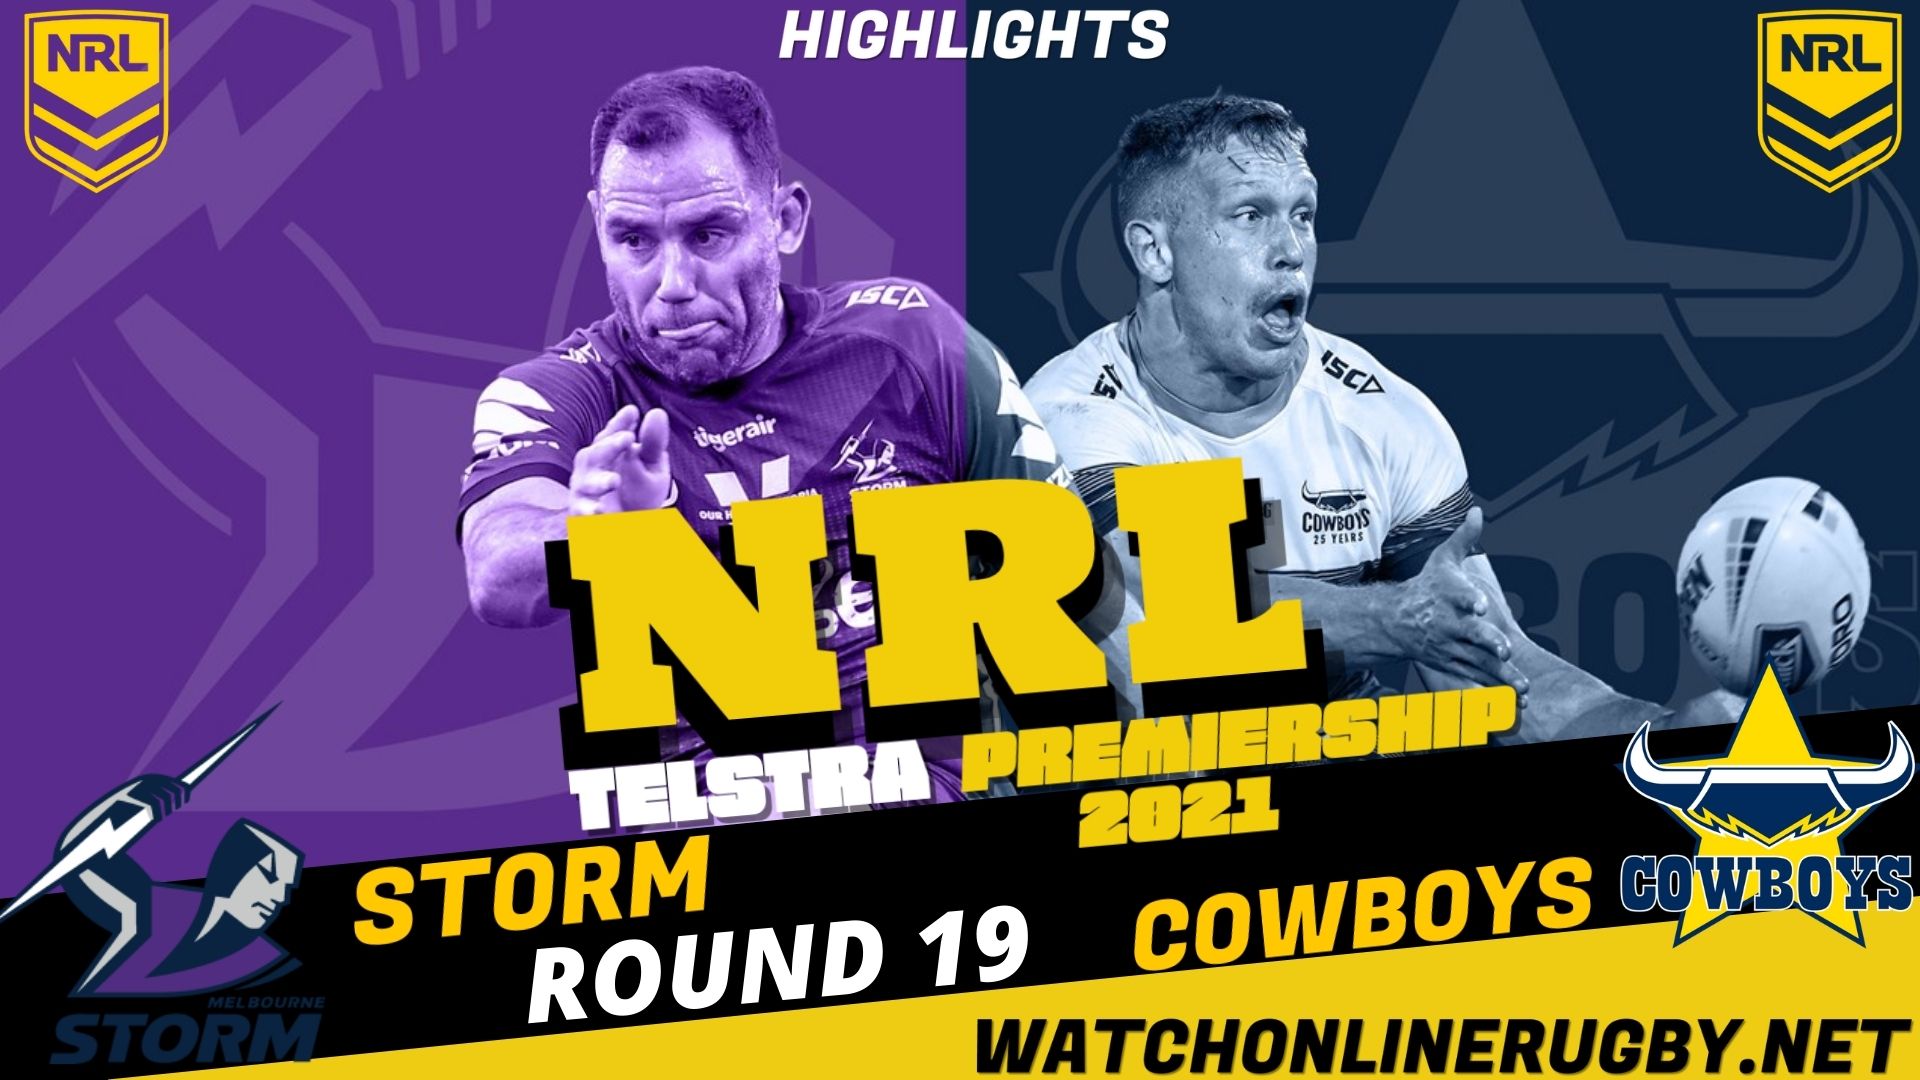 Cowboys Vs Storm Highlights RD 19 NRL Rugby